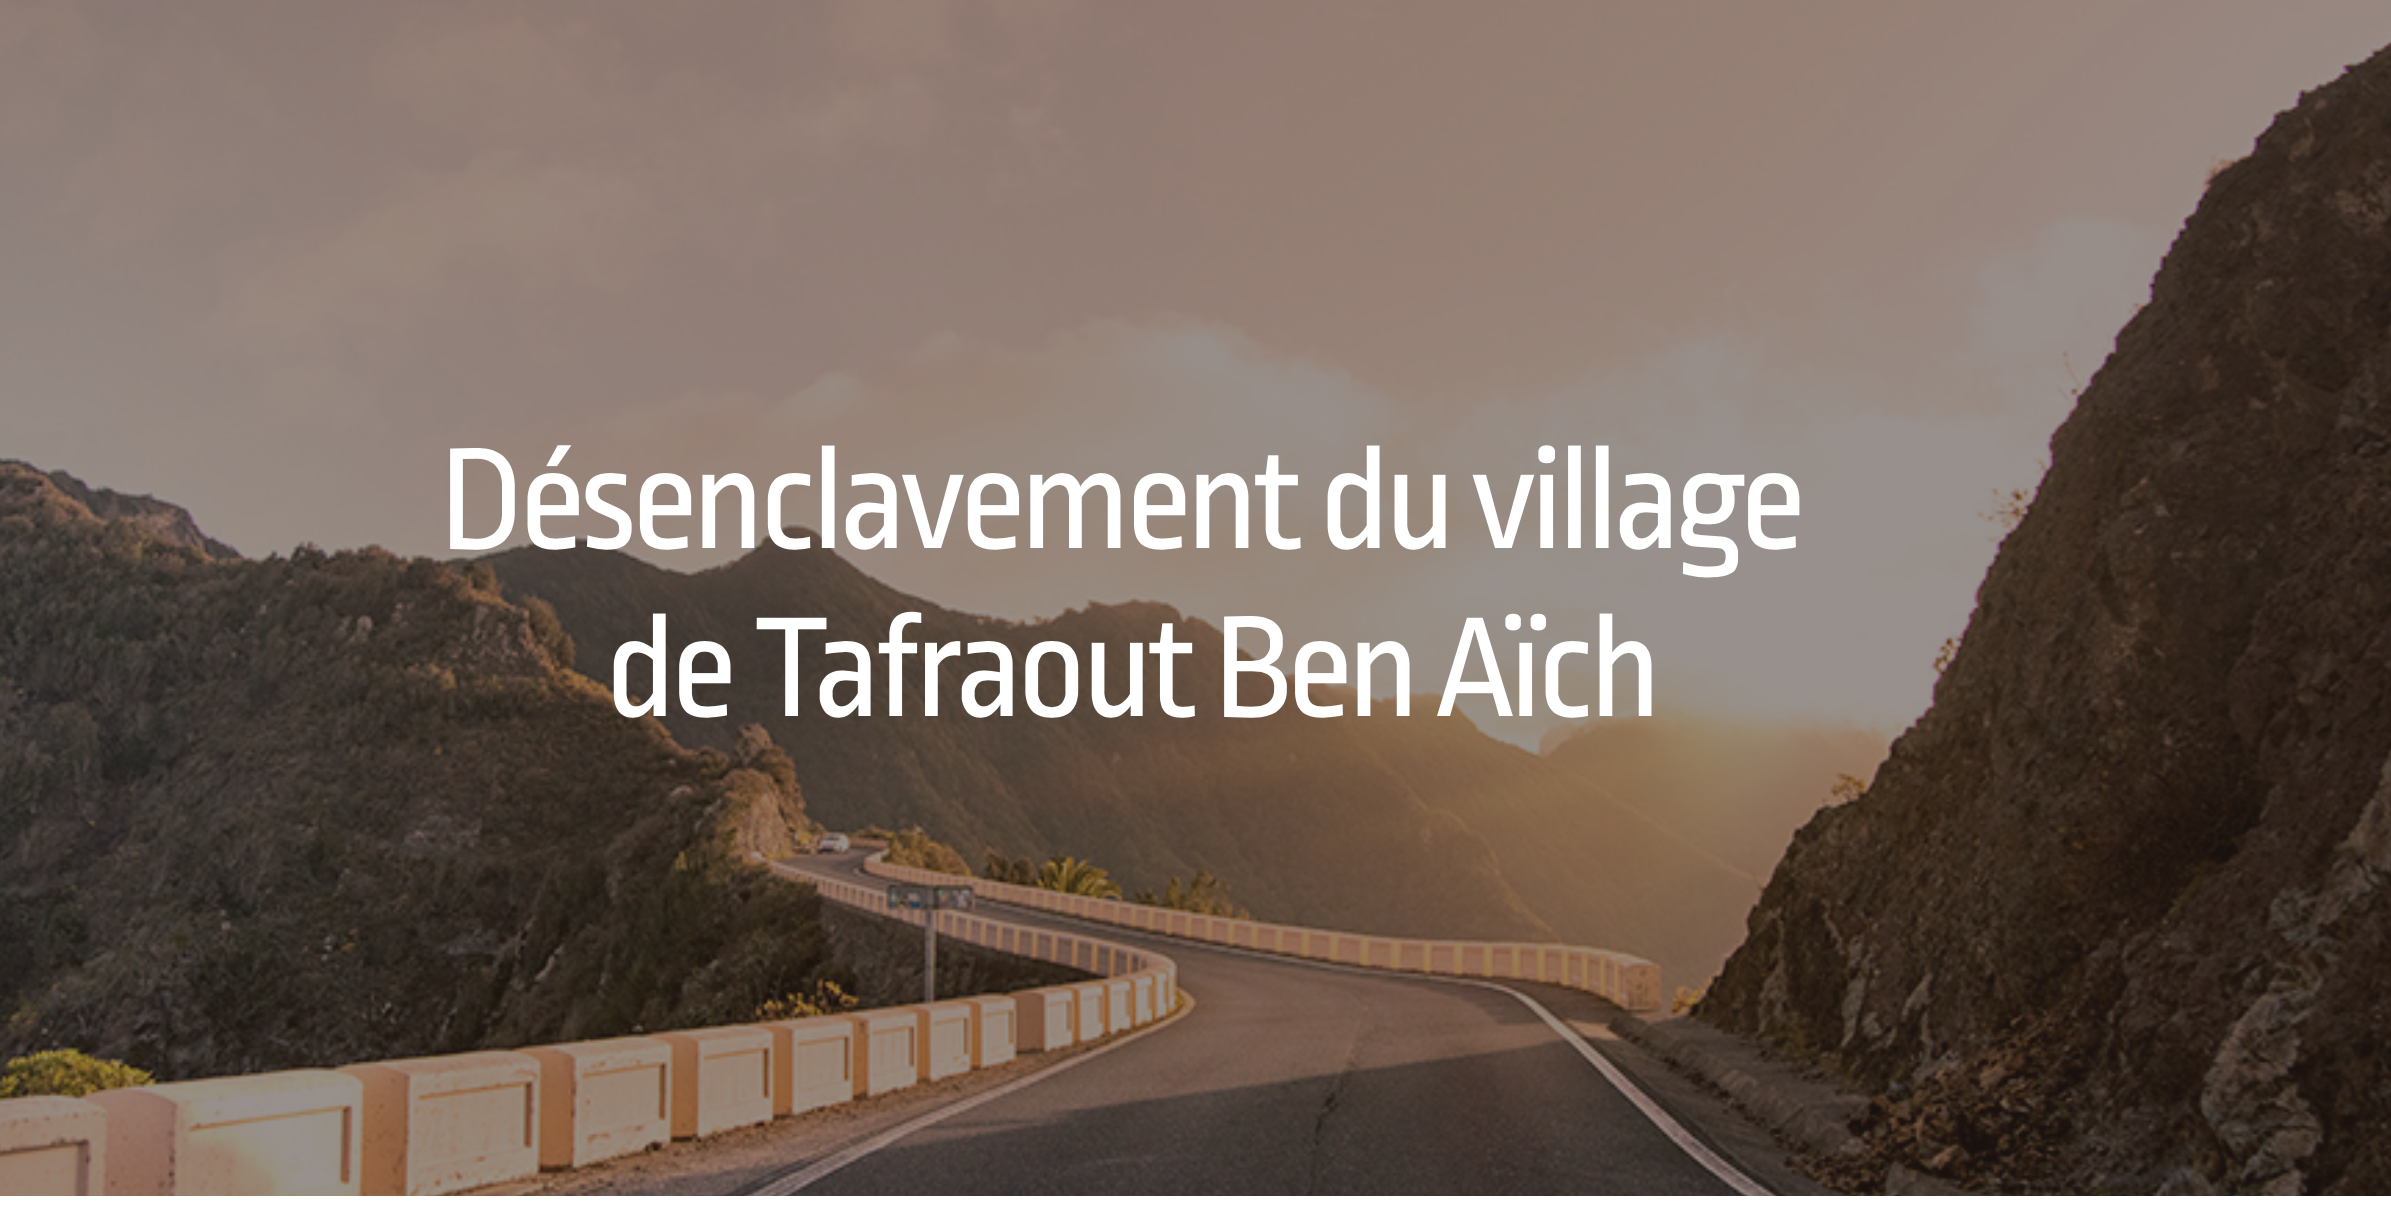 Désenclavement du village de Tafraout Ben Aïch avec BackUp Rural.